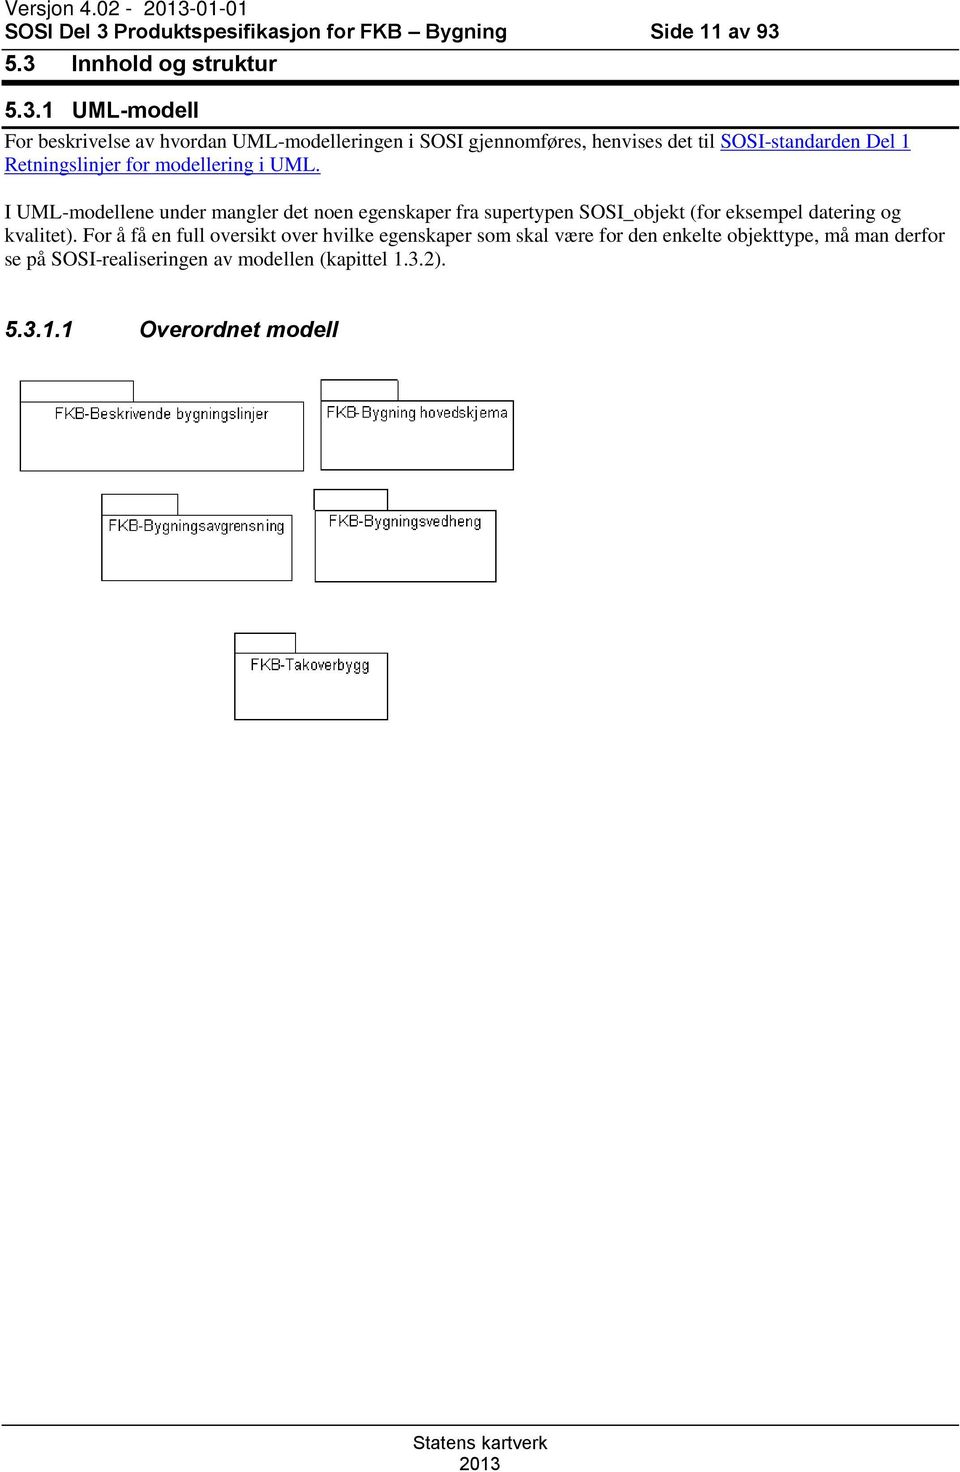 5.3 Innhold og struktur 5.3.1 UML-modell For beskrivelse av hvordan UML-modelleringen i SOSI gjennomføres, henvises det til SOSI-standarden